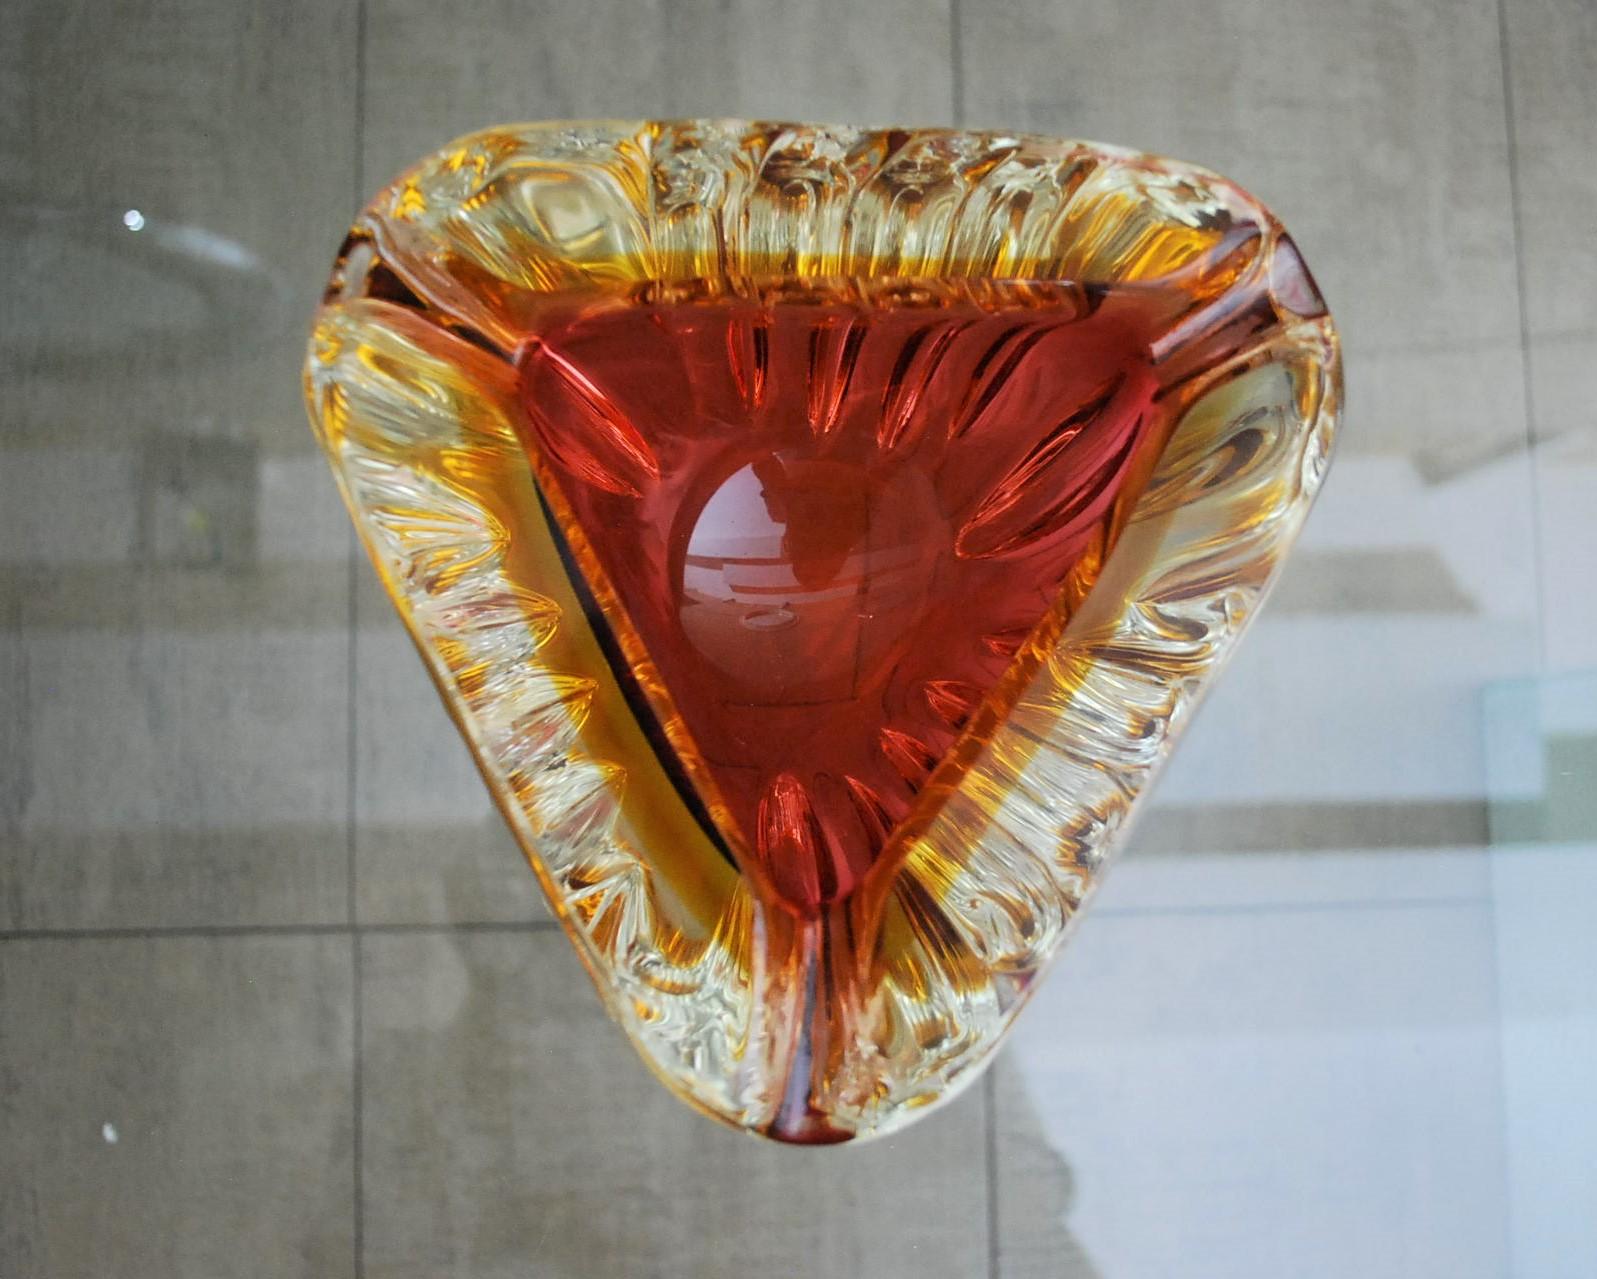 Murano Glass Ashtray Decorative Bowl Flavio Poli Midcentury Italian Design 1970s For Sale 2